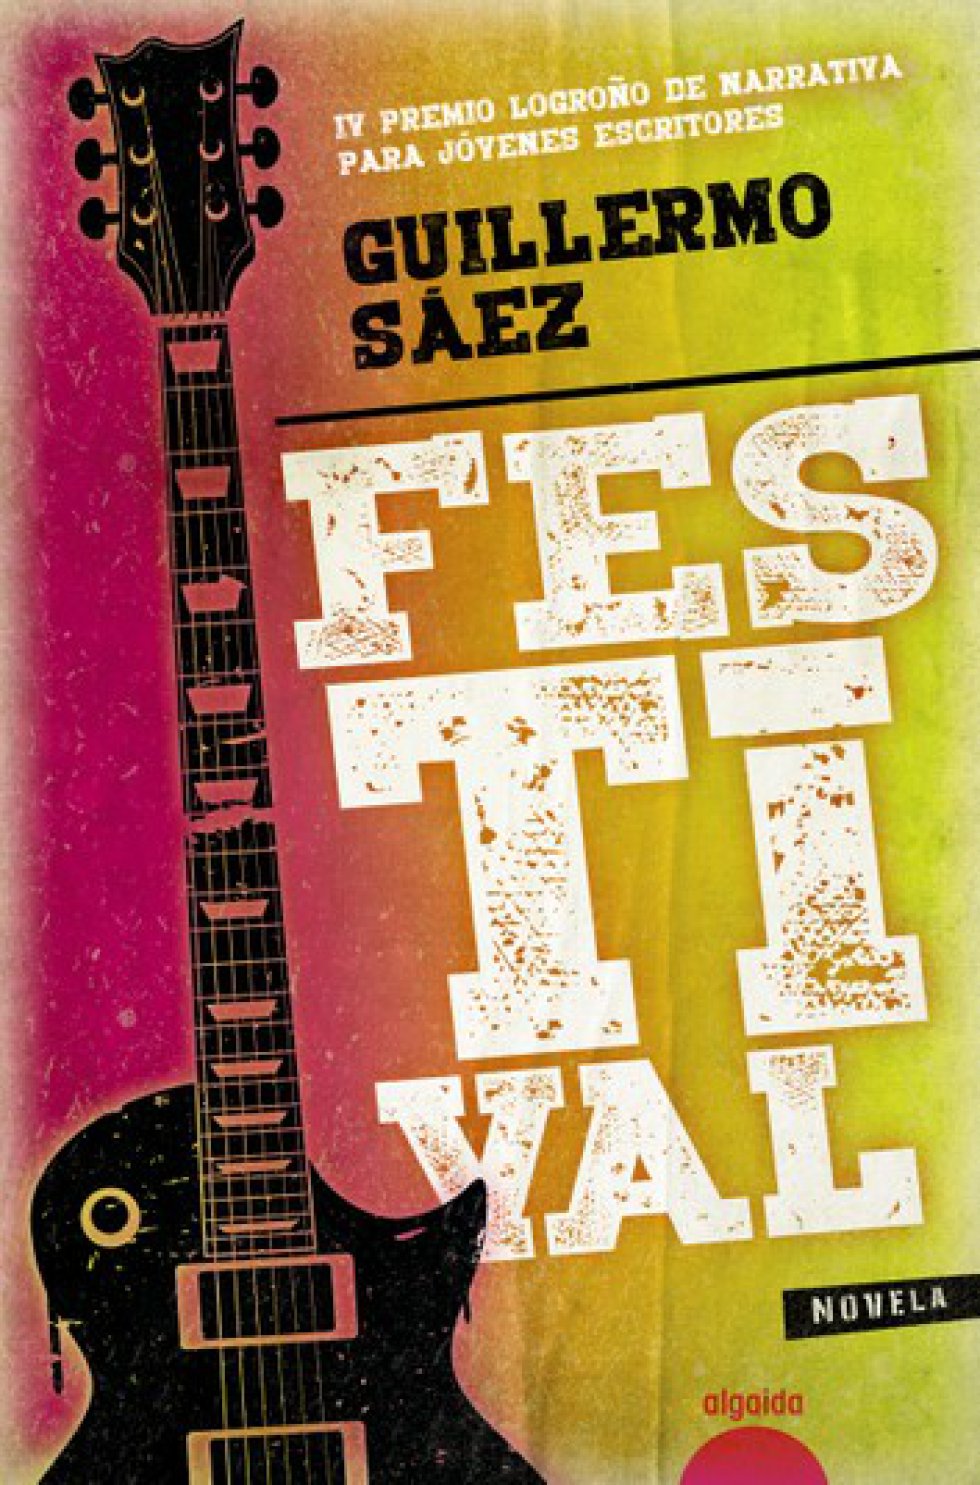 Festival (Guillermo Sáez)